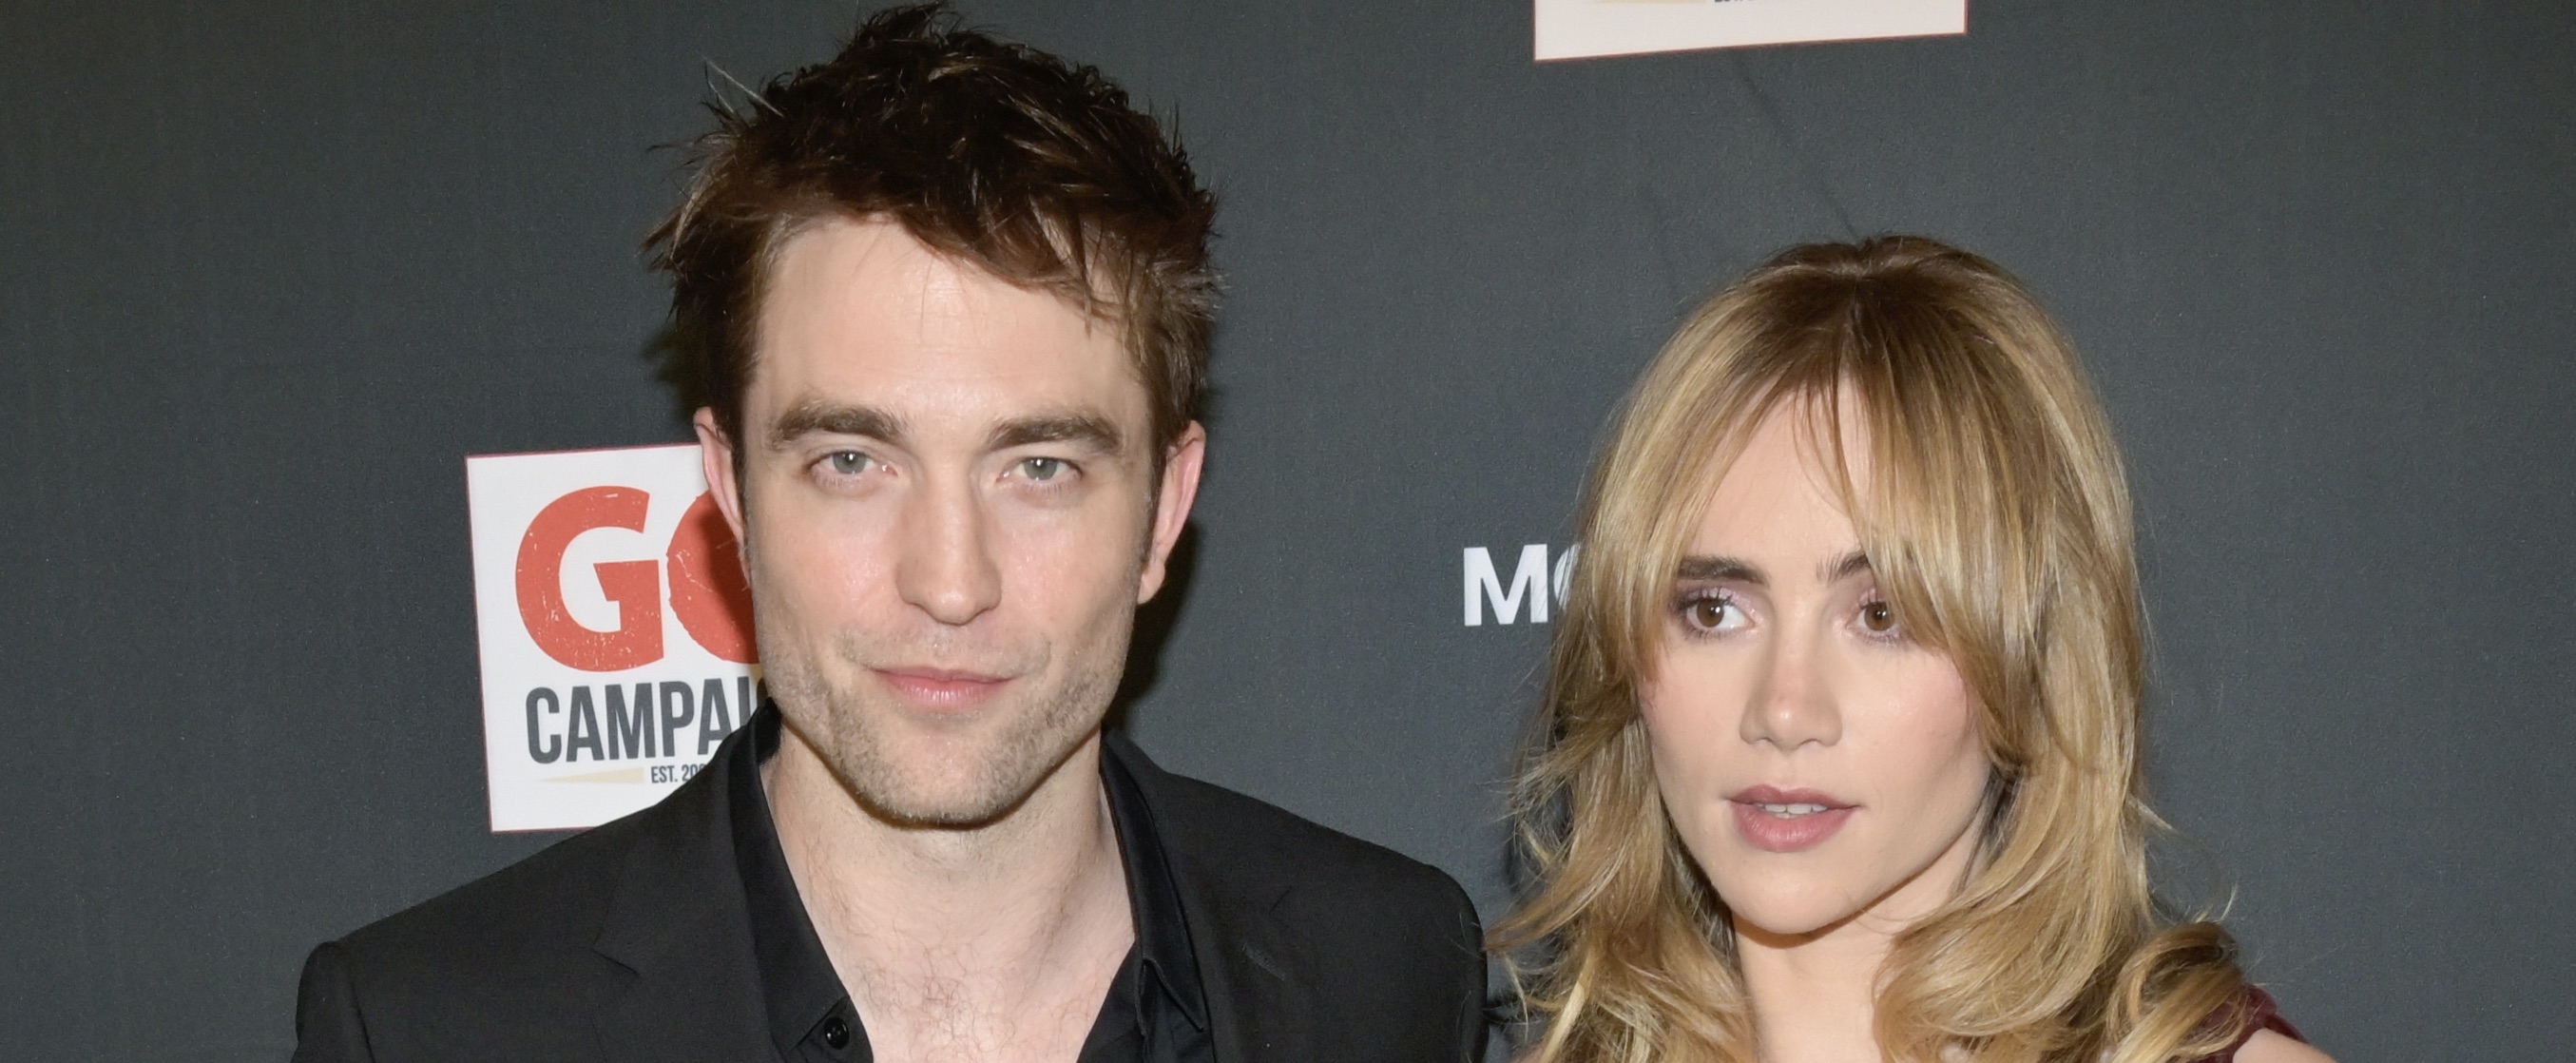 Zet de beschuit met muisjes maar klaar: Robert Pattinson en Suki Waterhouse verwelkomen kindje